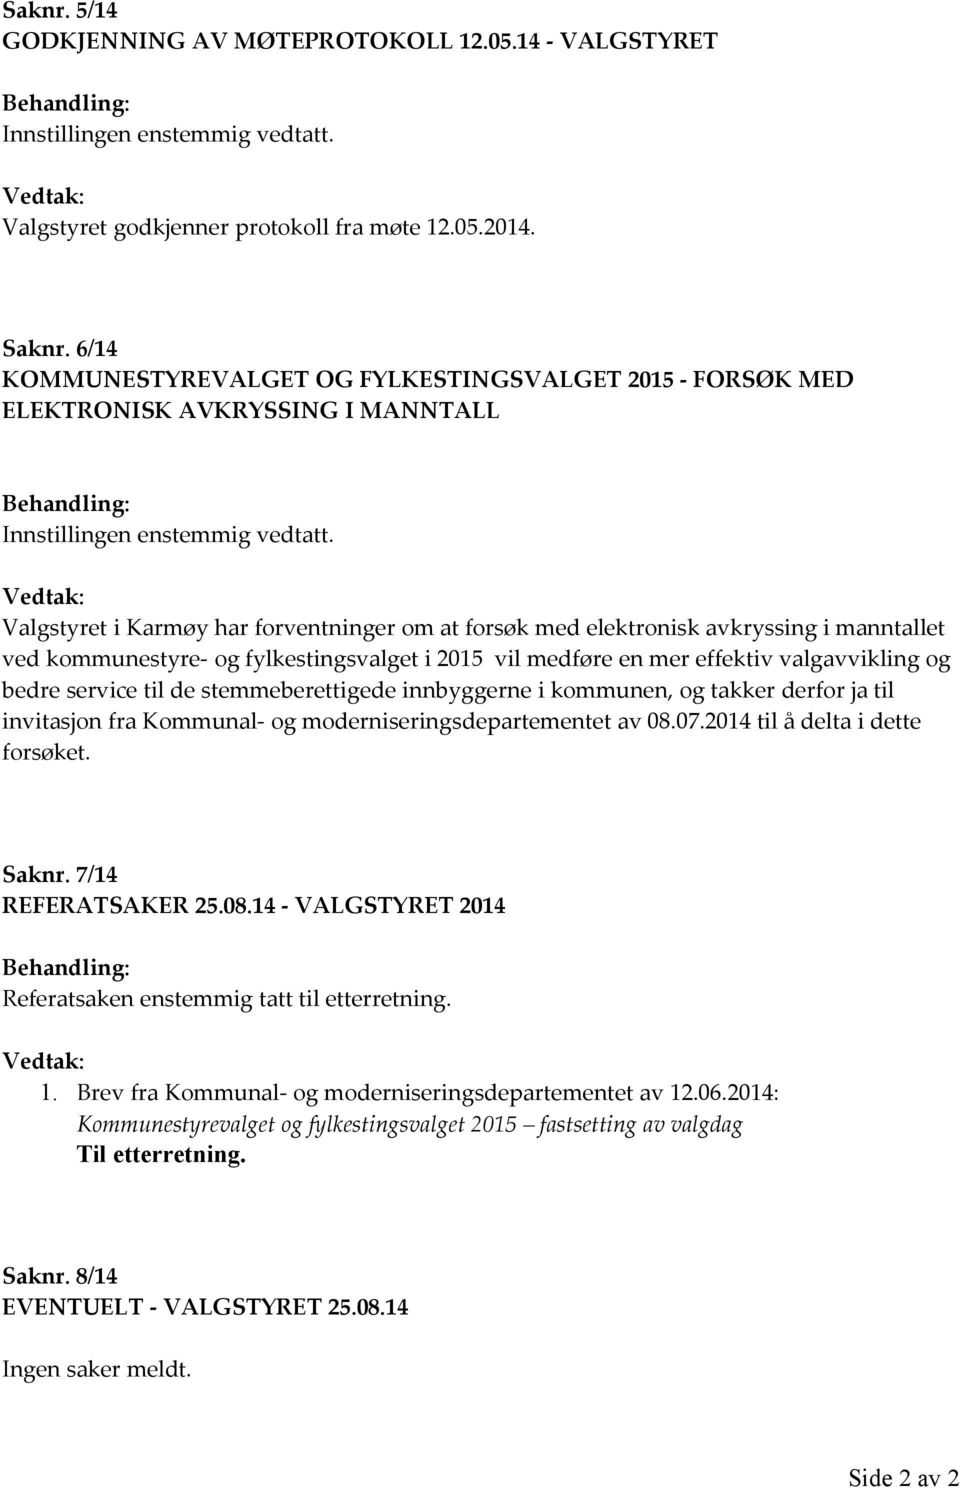 Vedtak: Valgstyret i Karmøy har forventninger om at forsøk med elektronisk avkryssing i manntallet ved kommunestyre- og fylkestingsvalget i 2015 vil medføre en mer effektiv valgavvikling og bedre